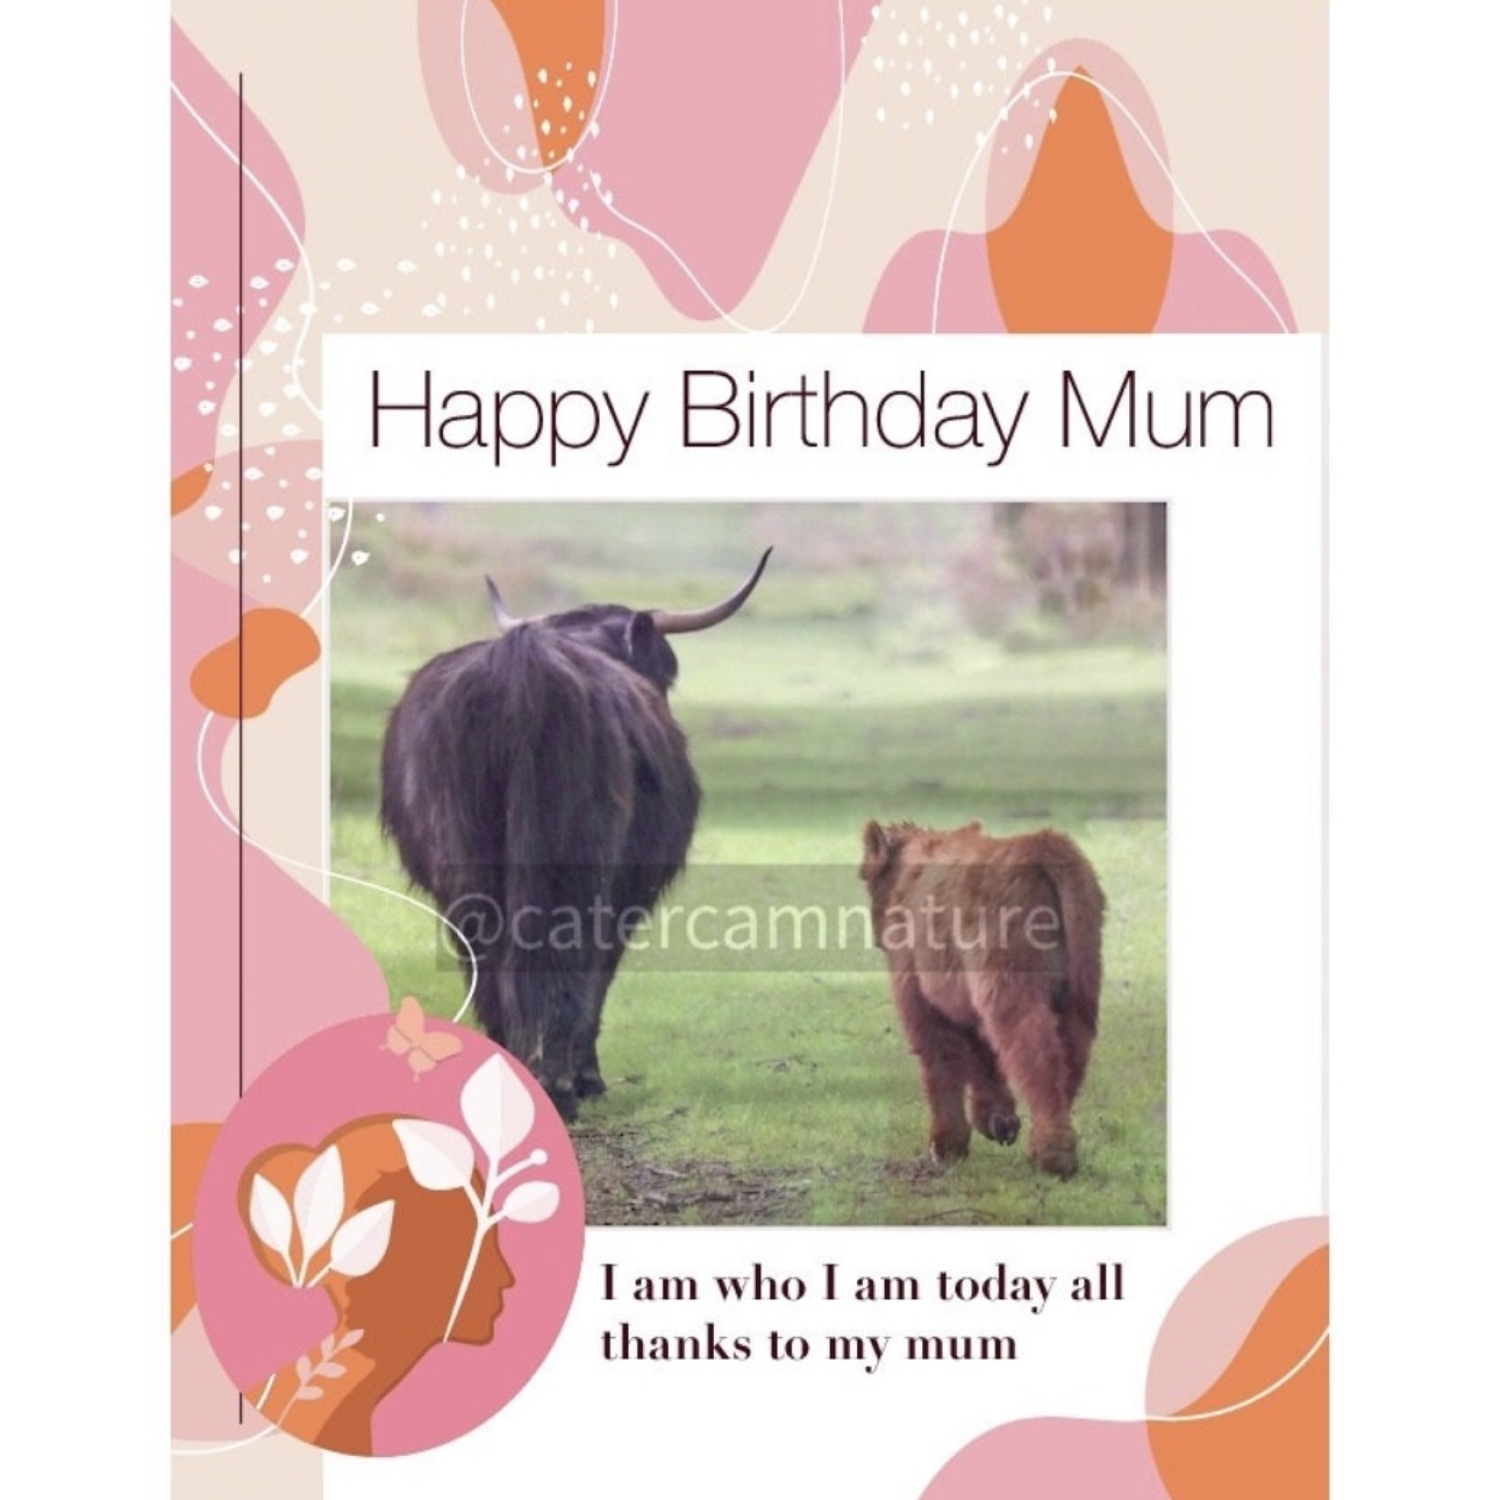 Happy Birthday - Mum